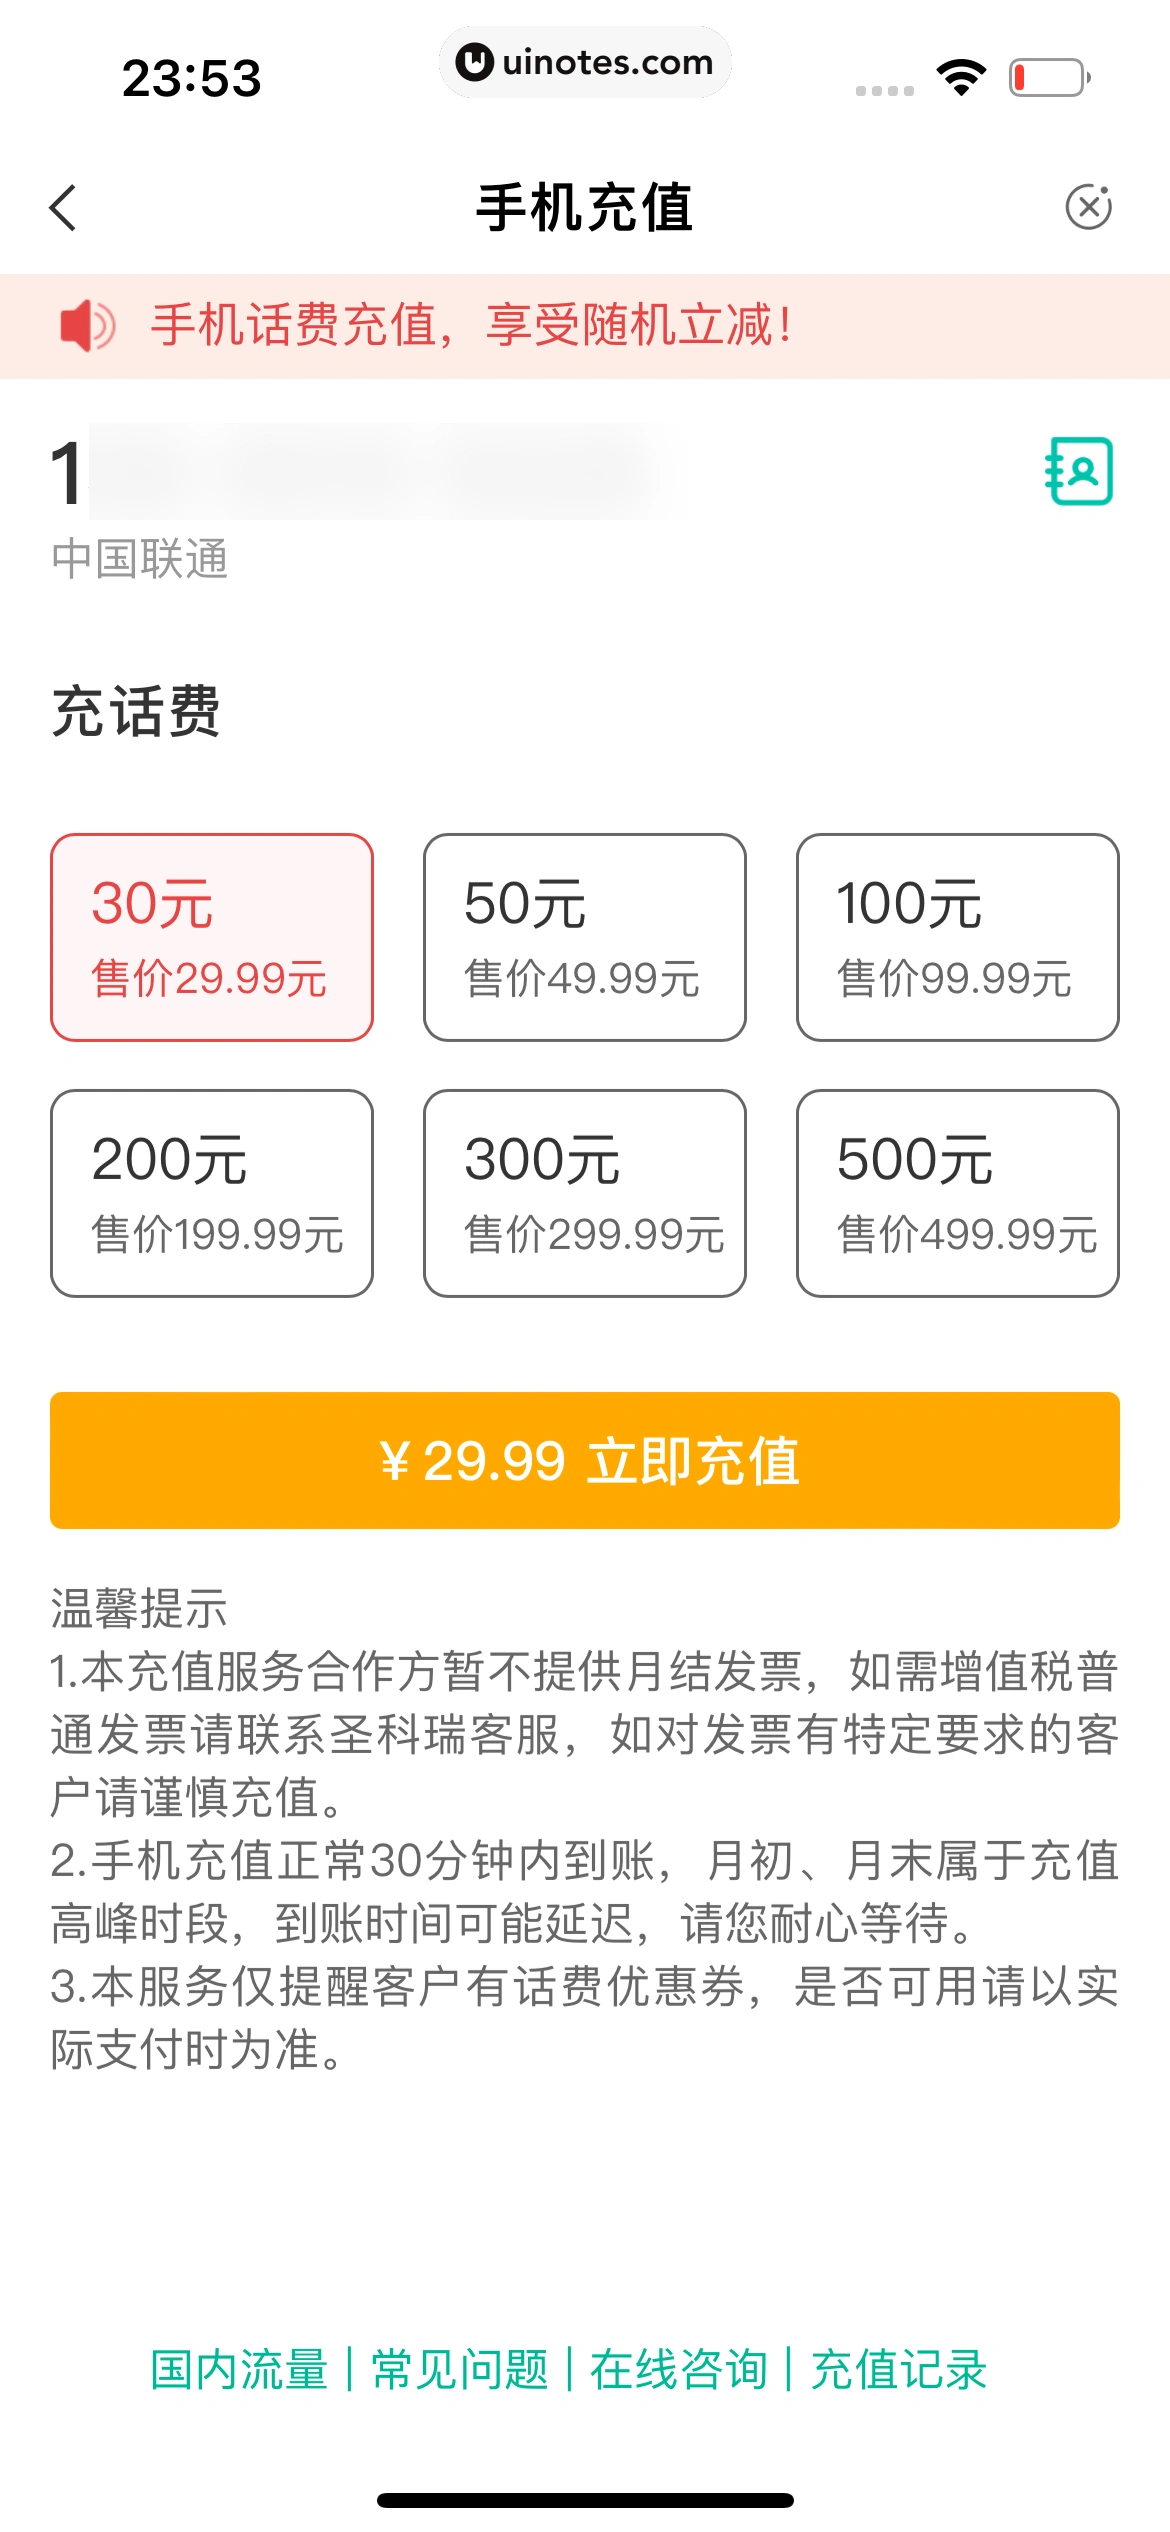 中国农业银行 App 截图 216 - UI Notes